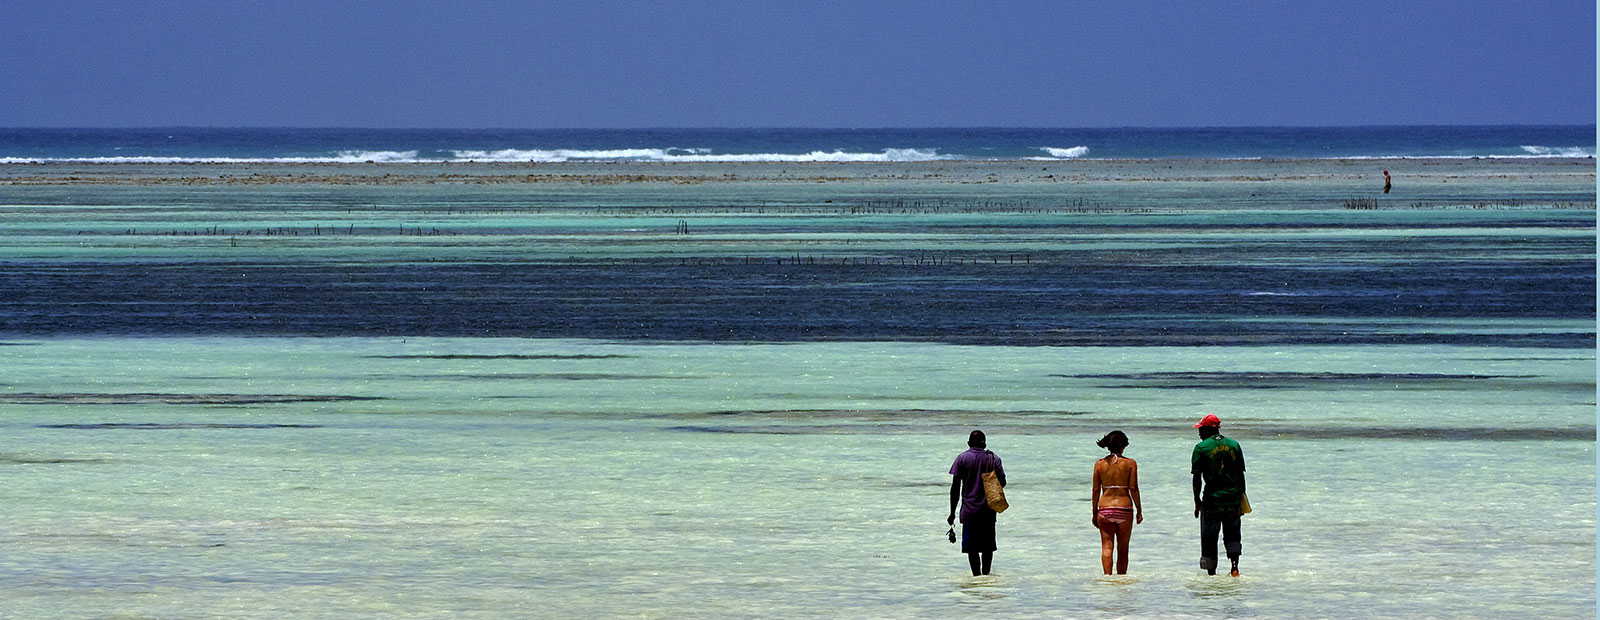 Exklusive Ferienhäuser im indischen Ozean